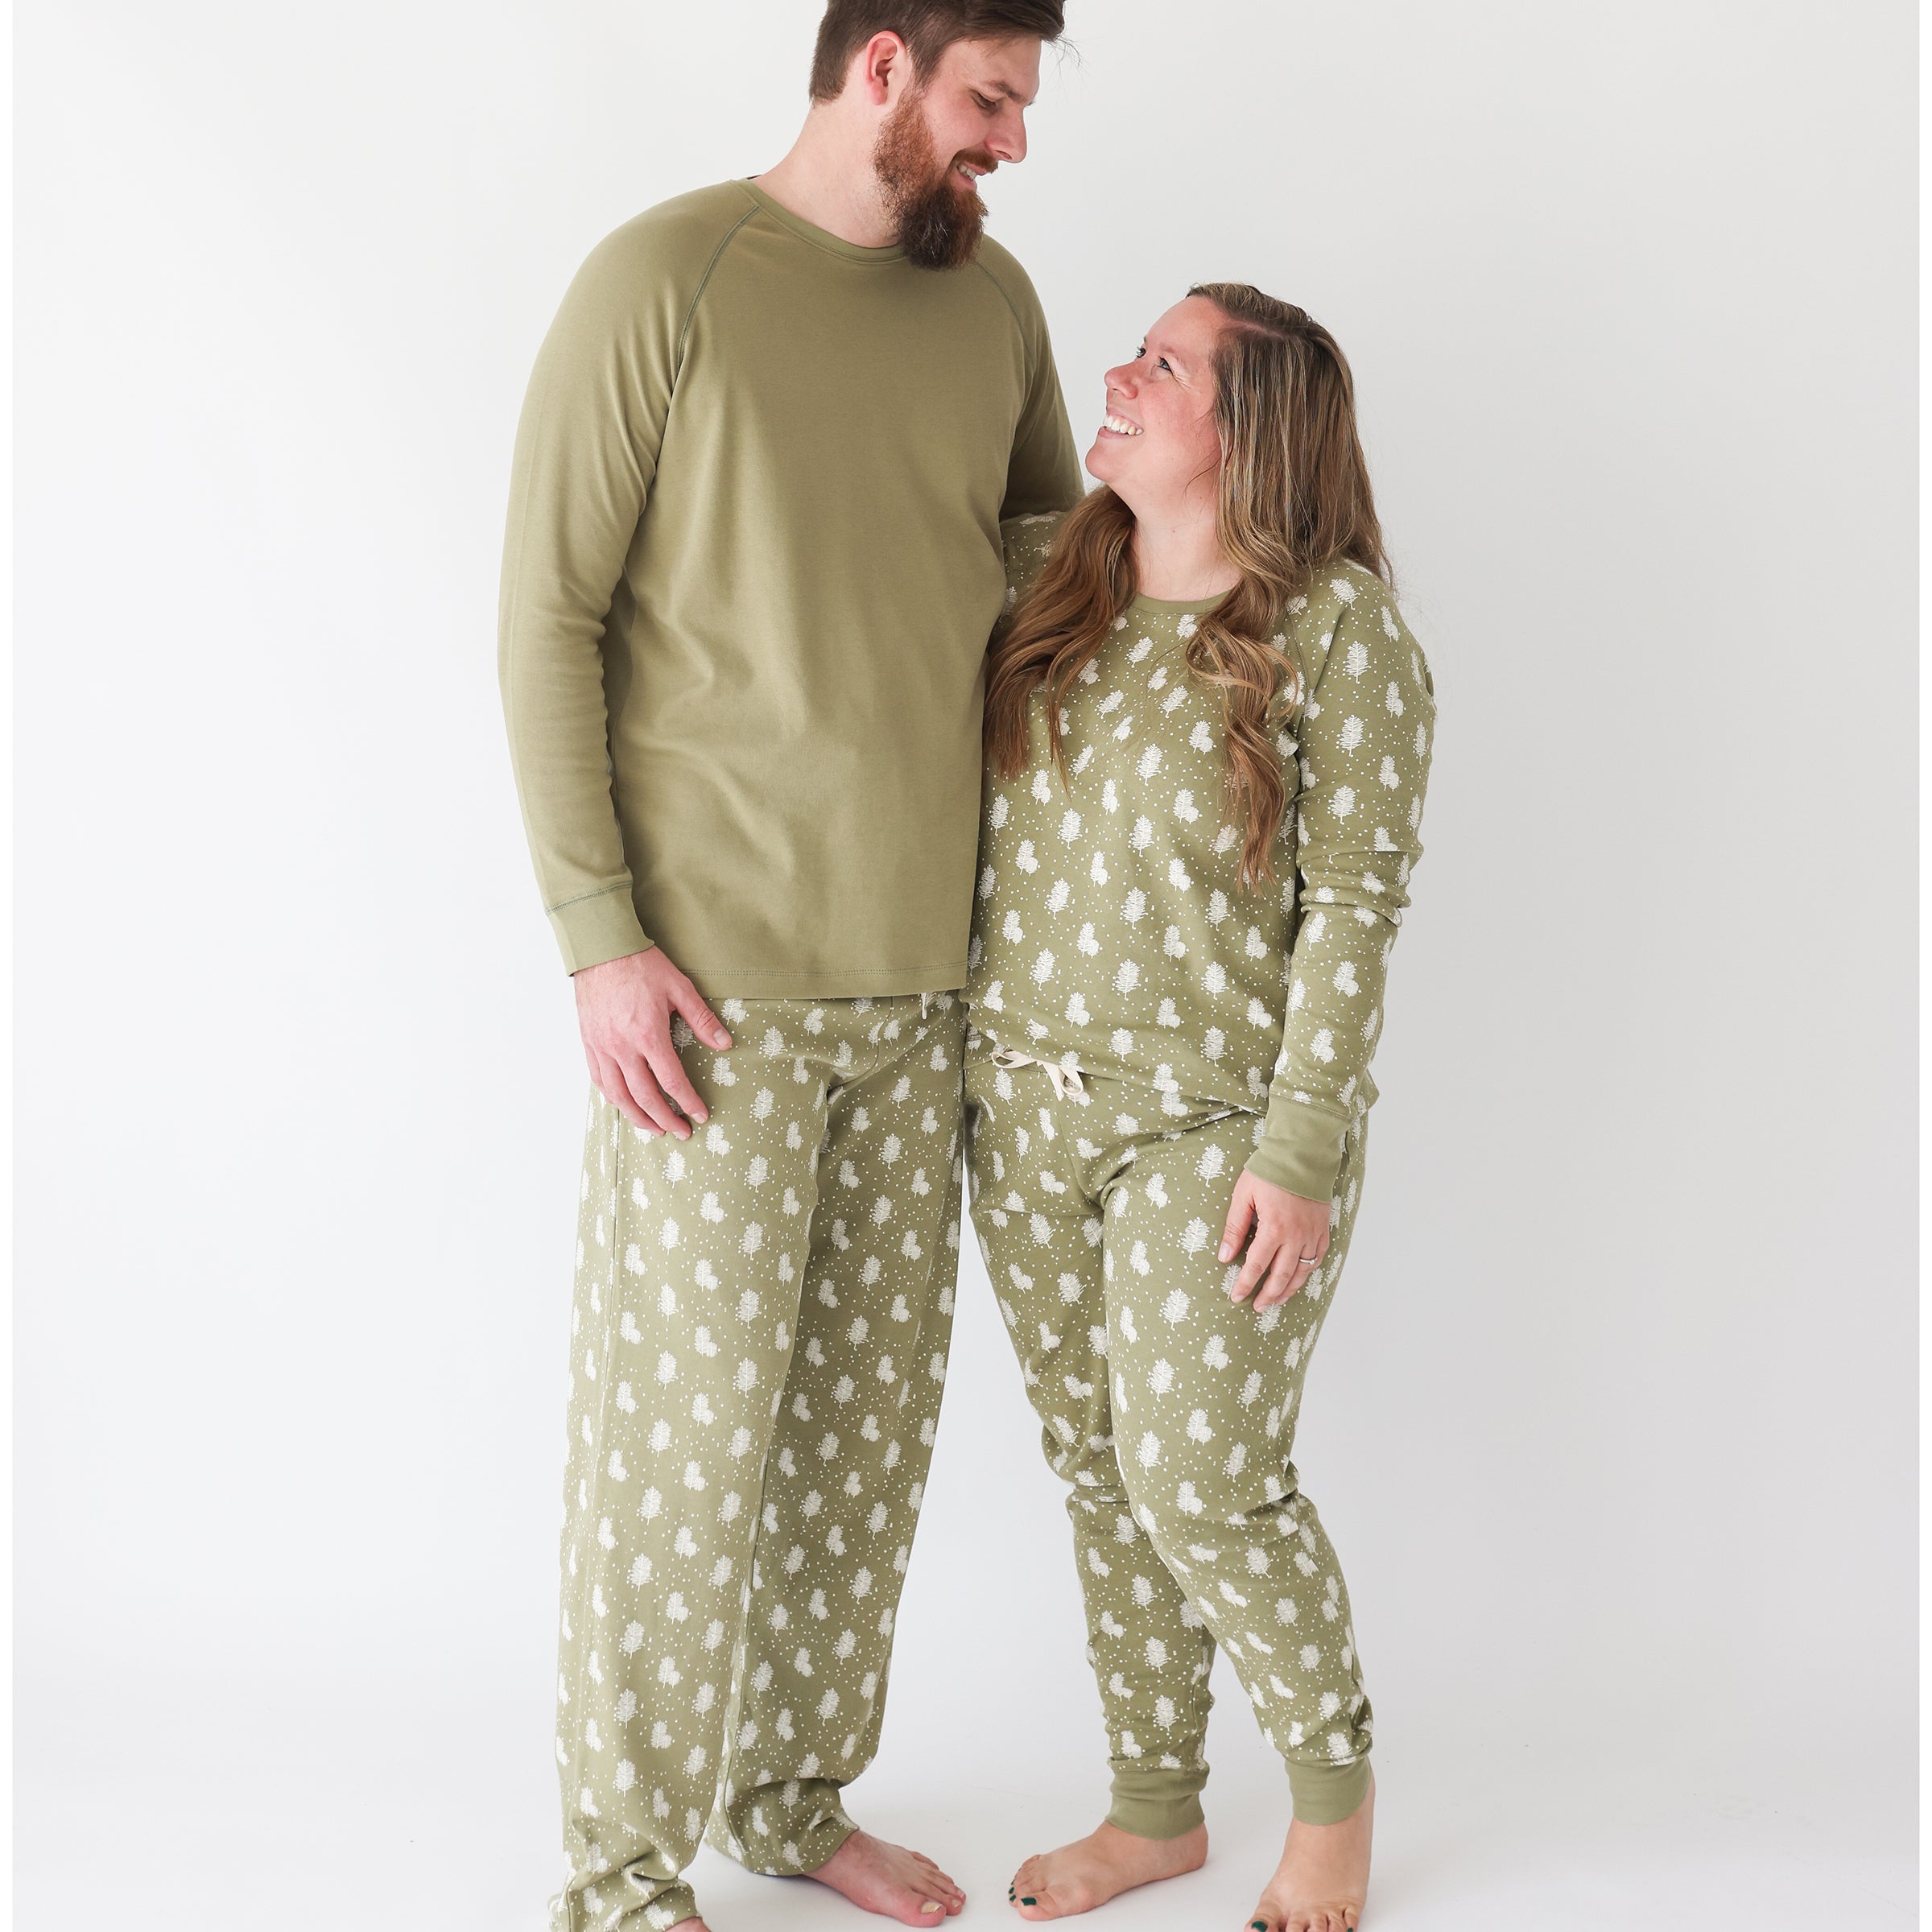 Organic Matching Pajamas - Unisex/Men's